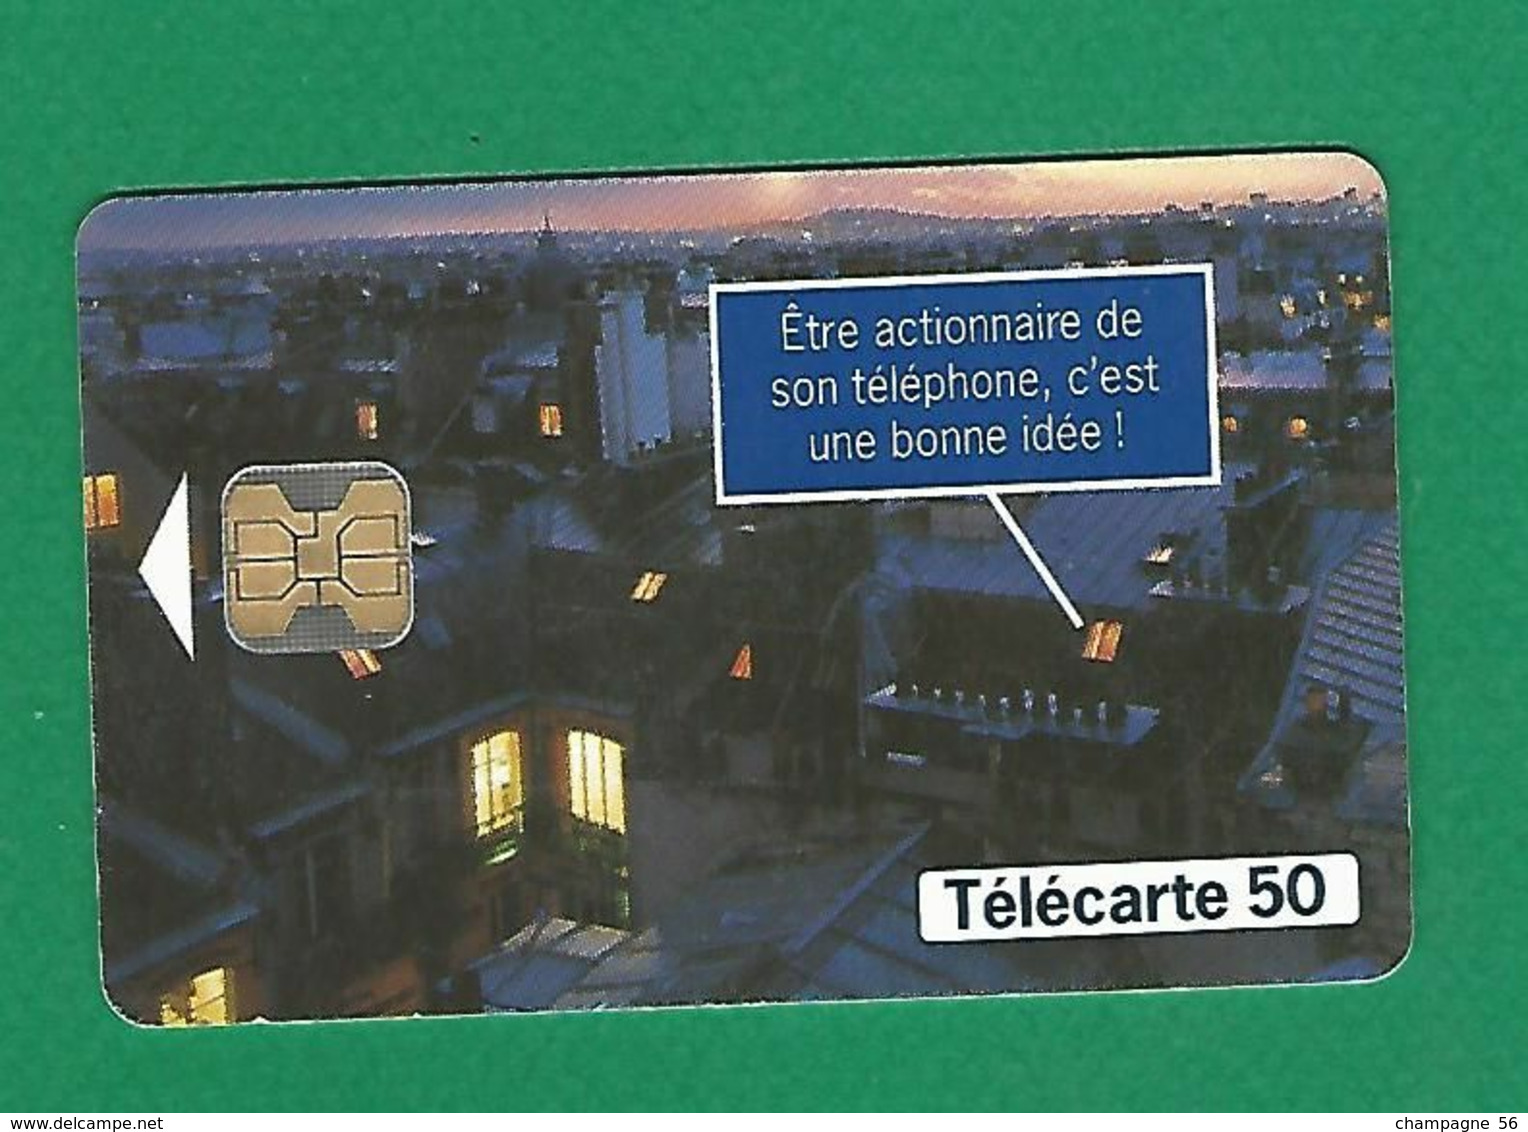 VARIÉTÉS FRANCE 97 F784E 50 / 05/97  OB2  TOITS CAPITAL FRANCE TELECOM  50 UNITES UTILISÉE - Variétés